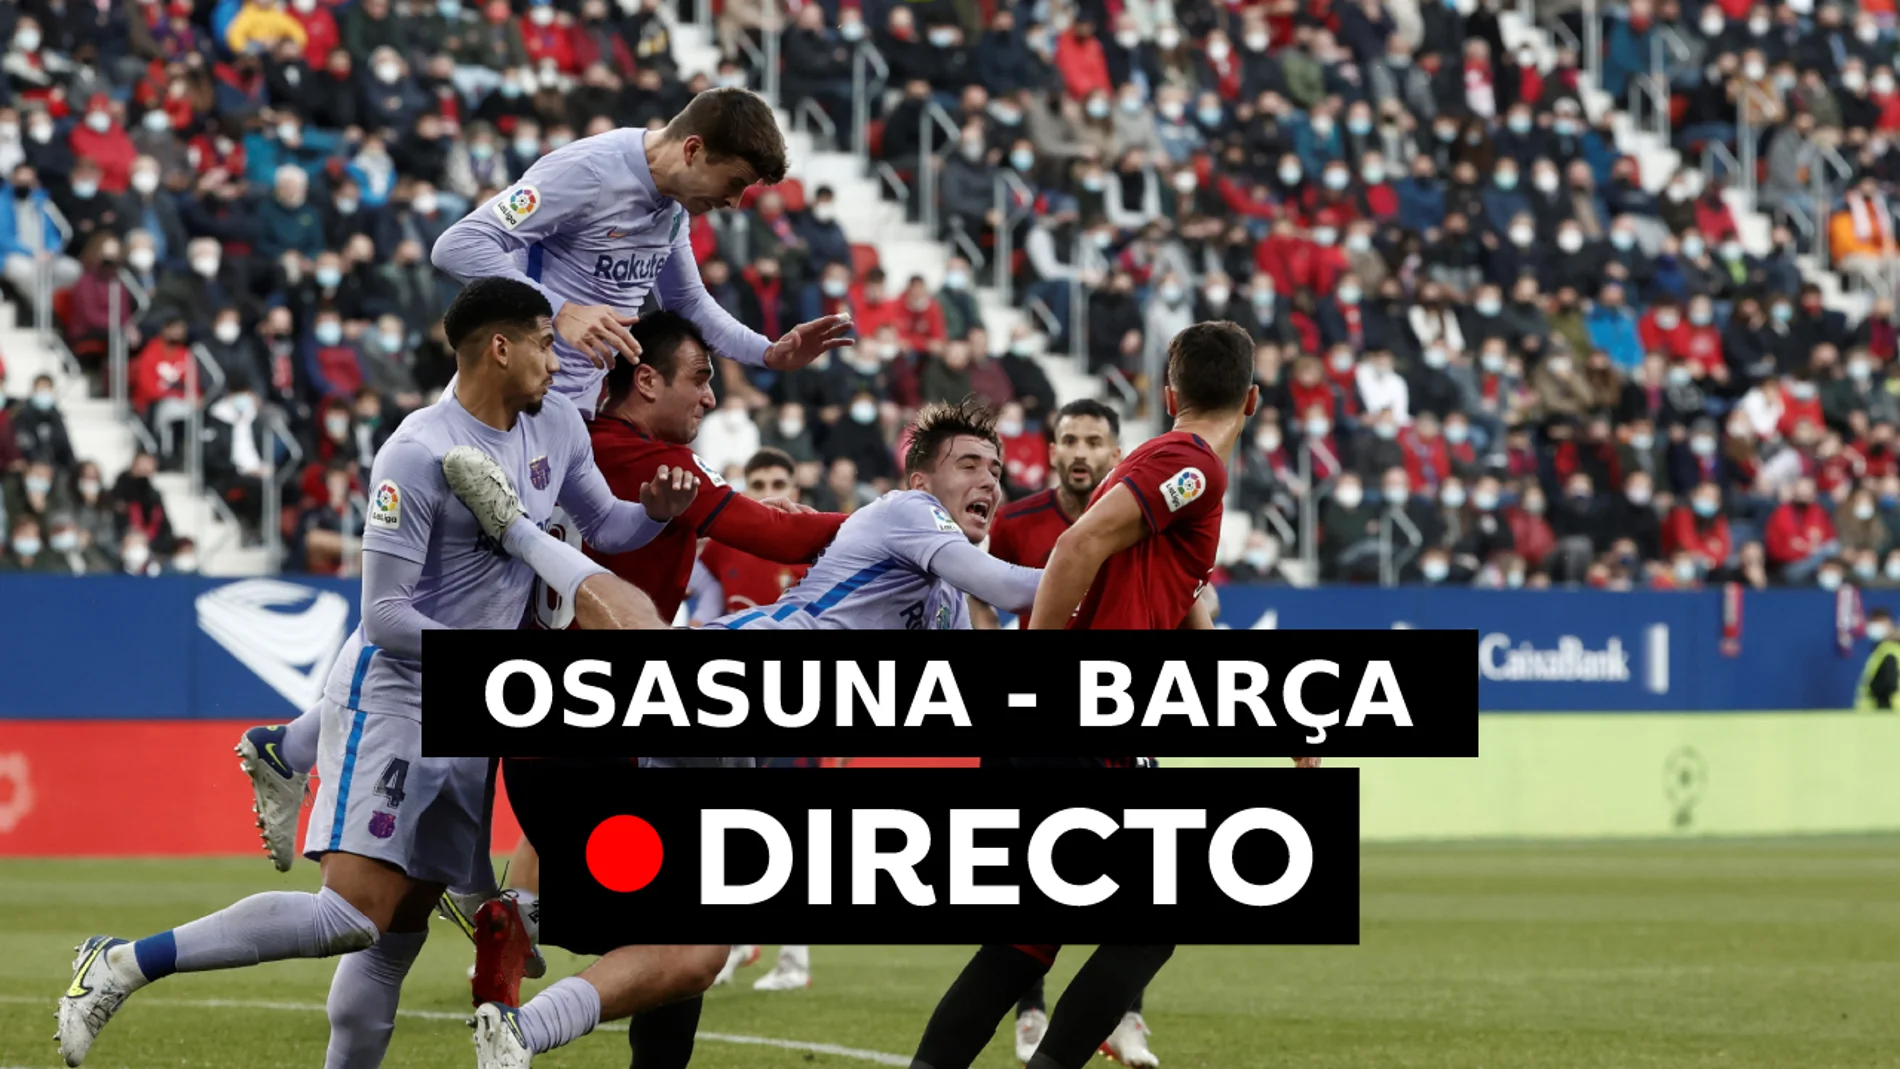 Osasuna - Barcelona: Resultado, resumen y goles de la Liga Santander, directo (2-2)